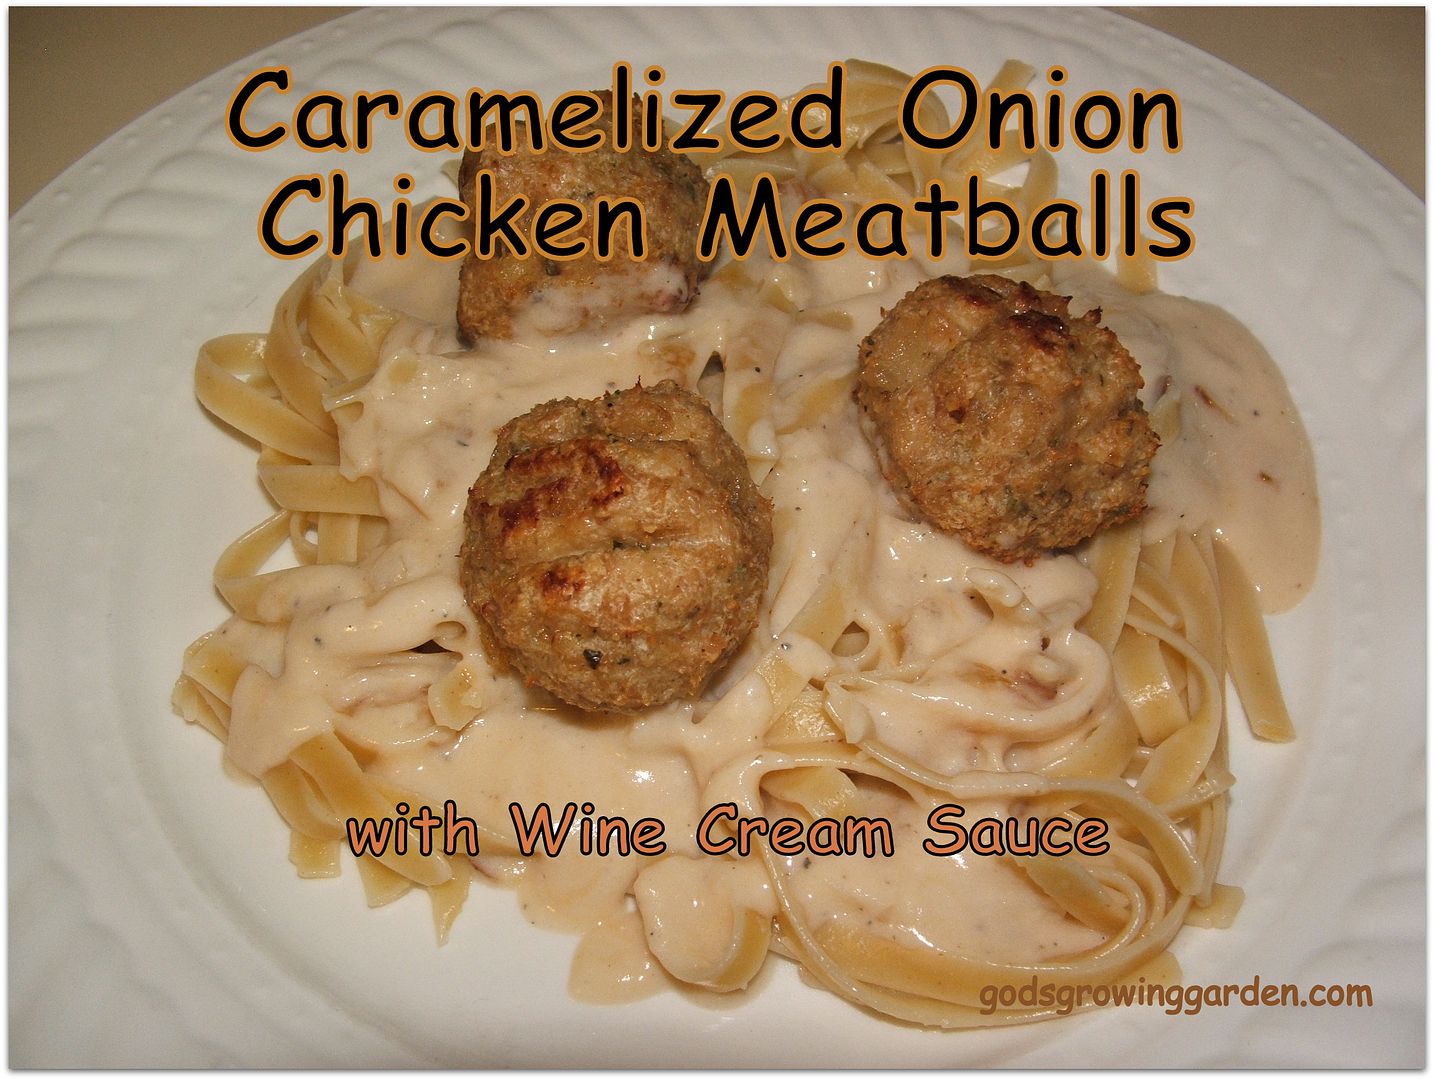 Carameized Onion Chicken Meatballs photo 013_zpsfd4698a6.jpg